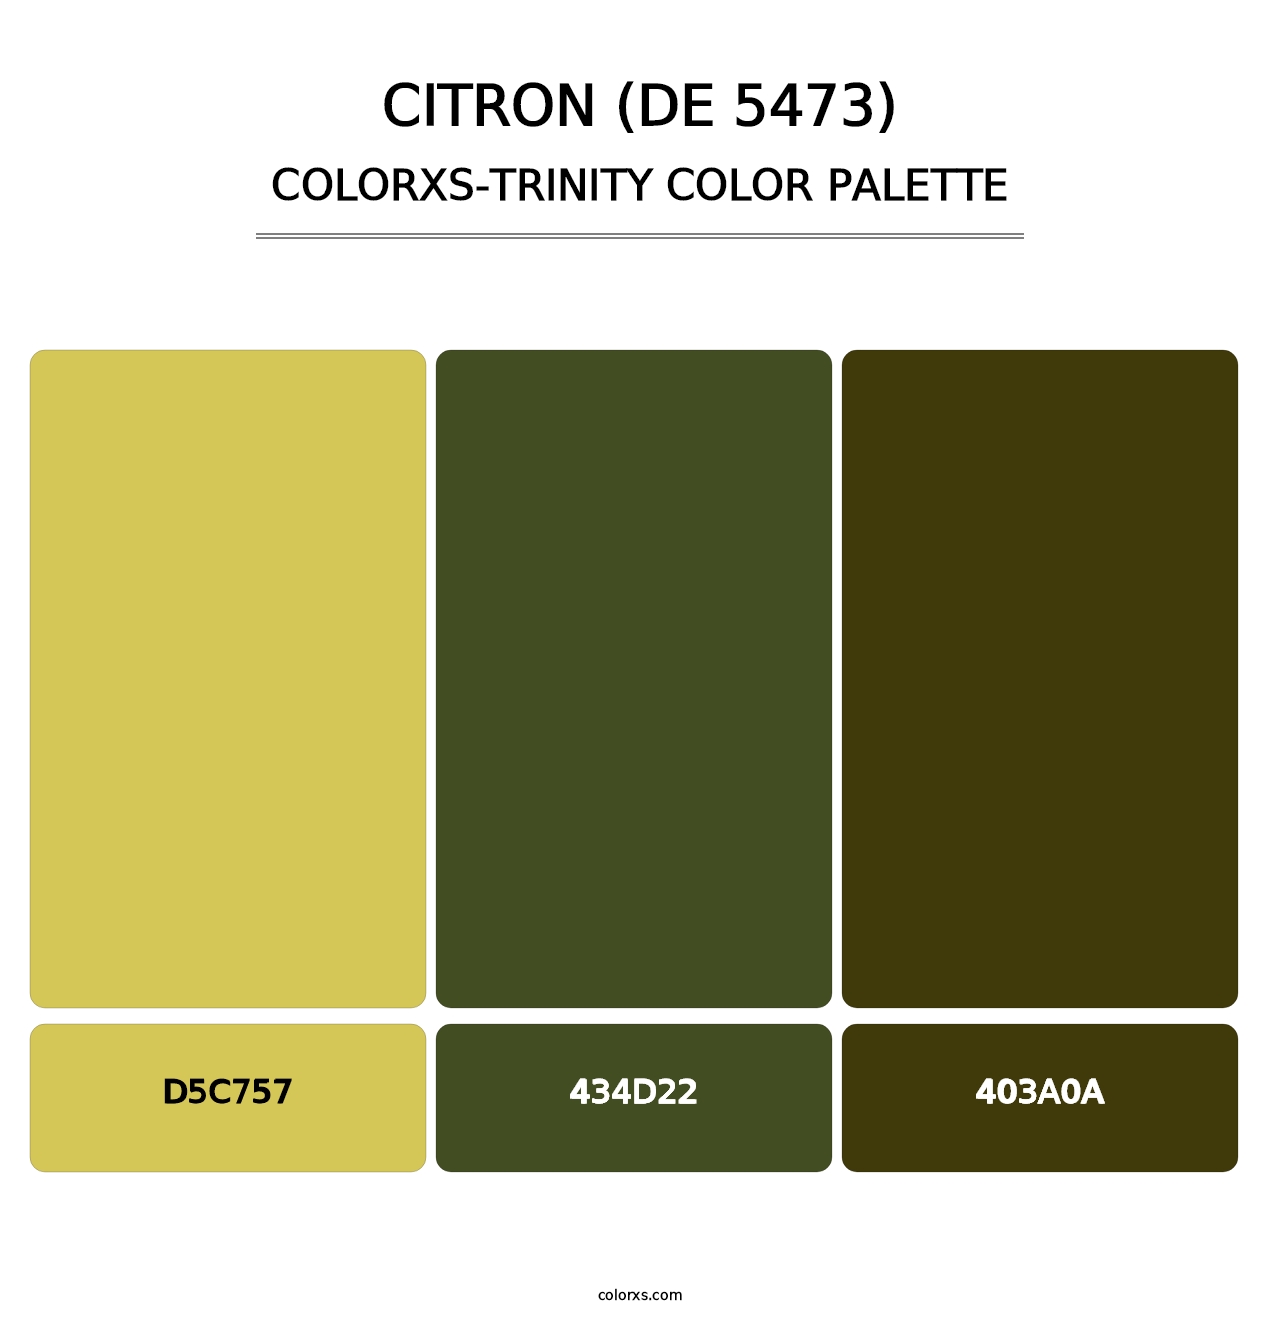 Citron (DE 5473) - Colorxs Trinity Palette